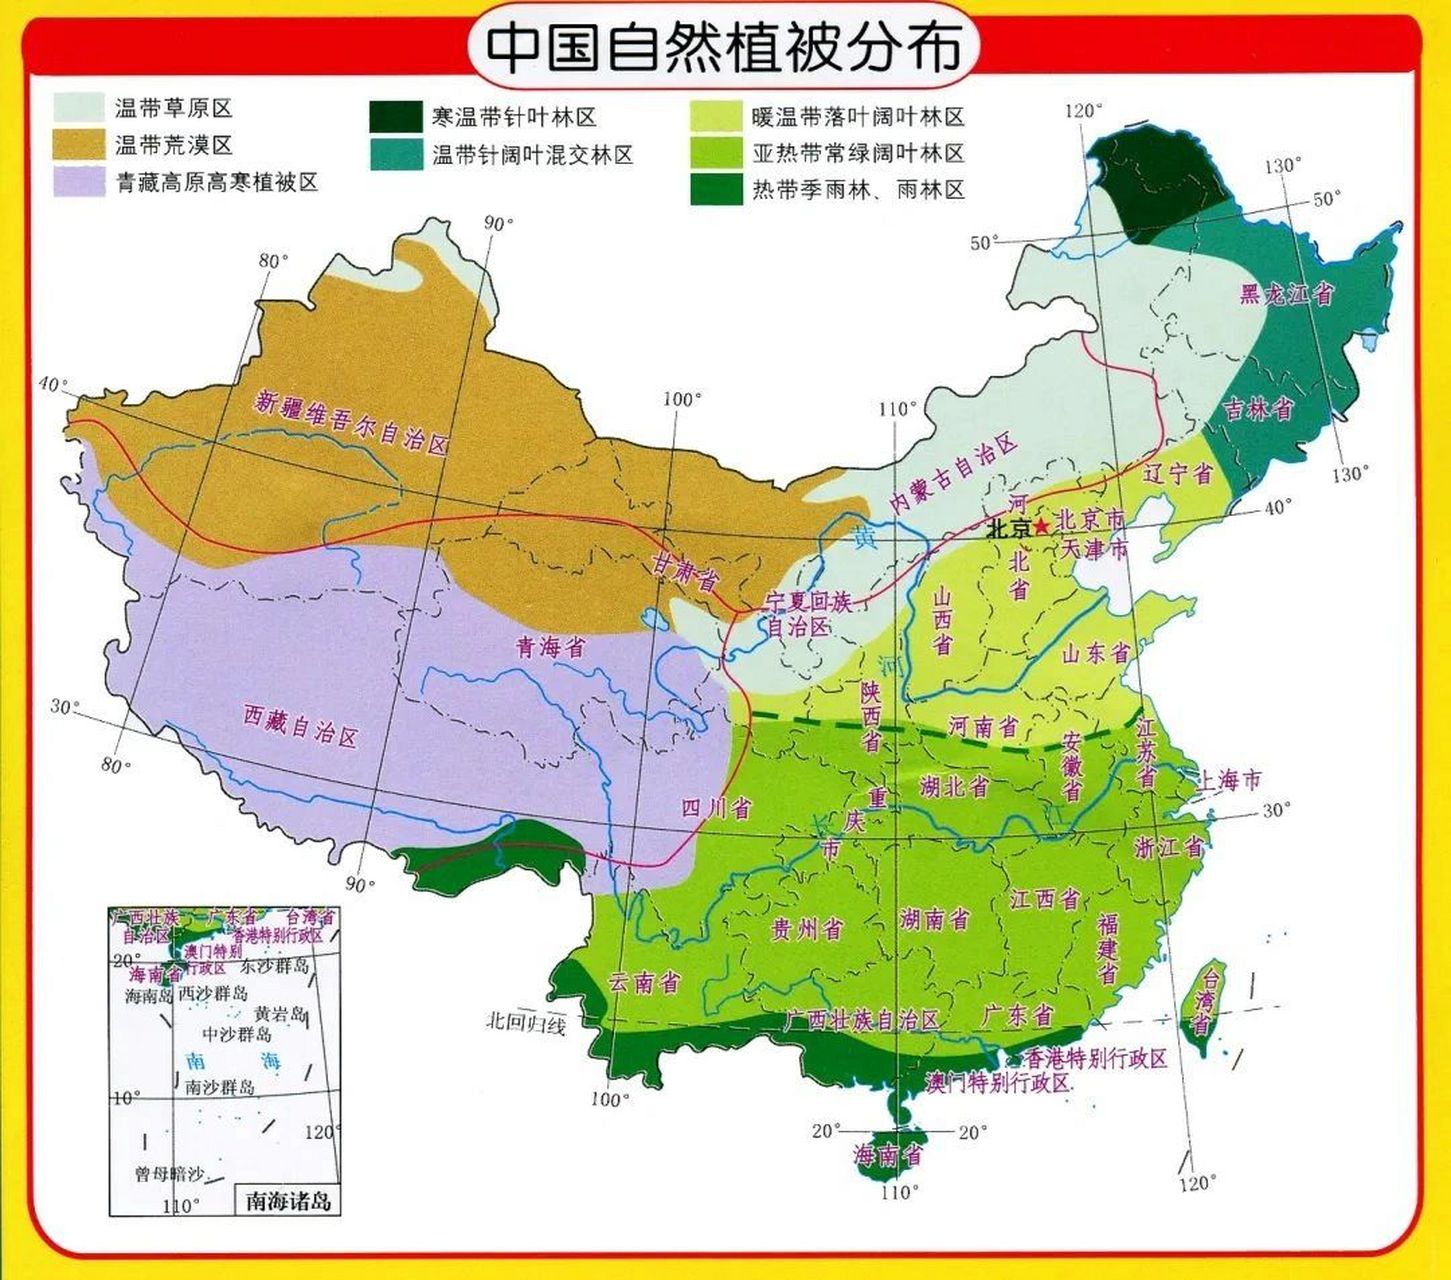 中国自然植被分布图 中国自然植被分布图